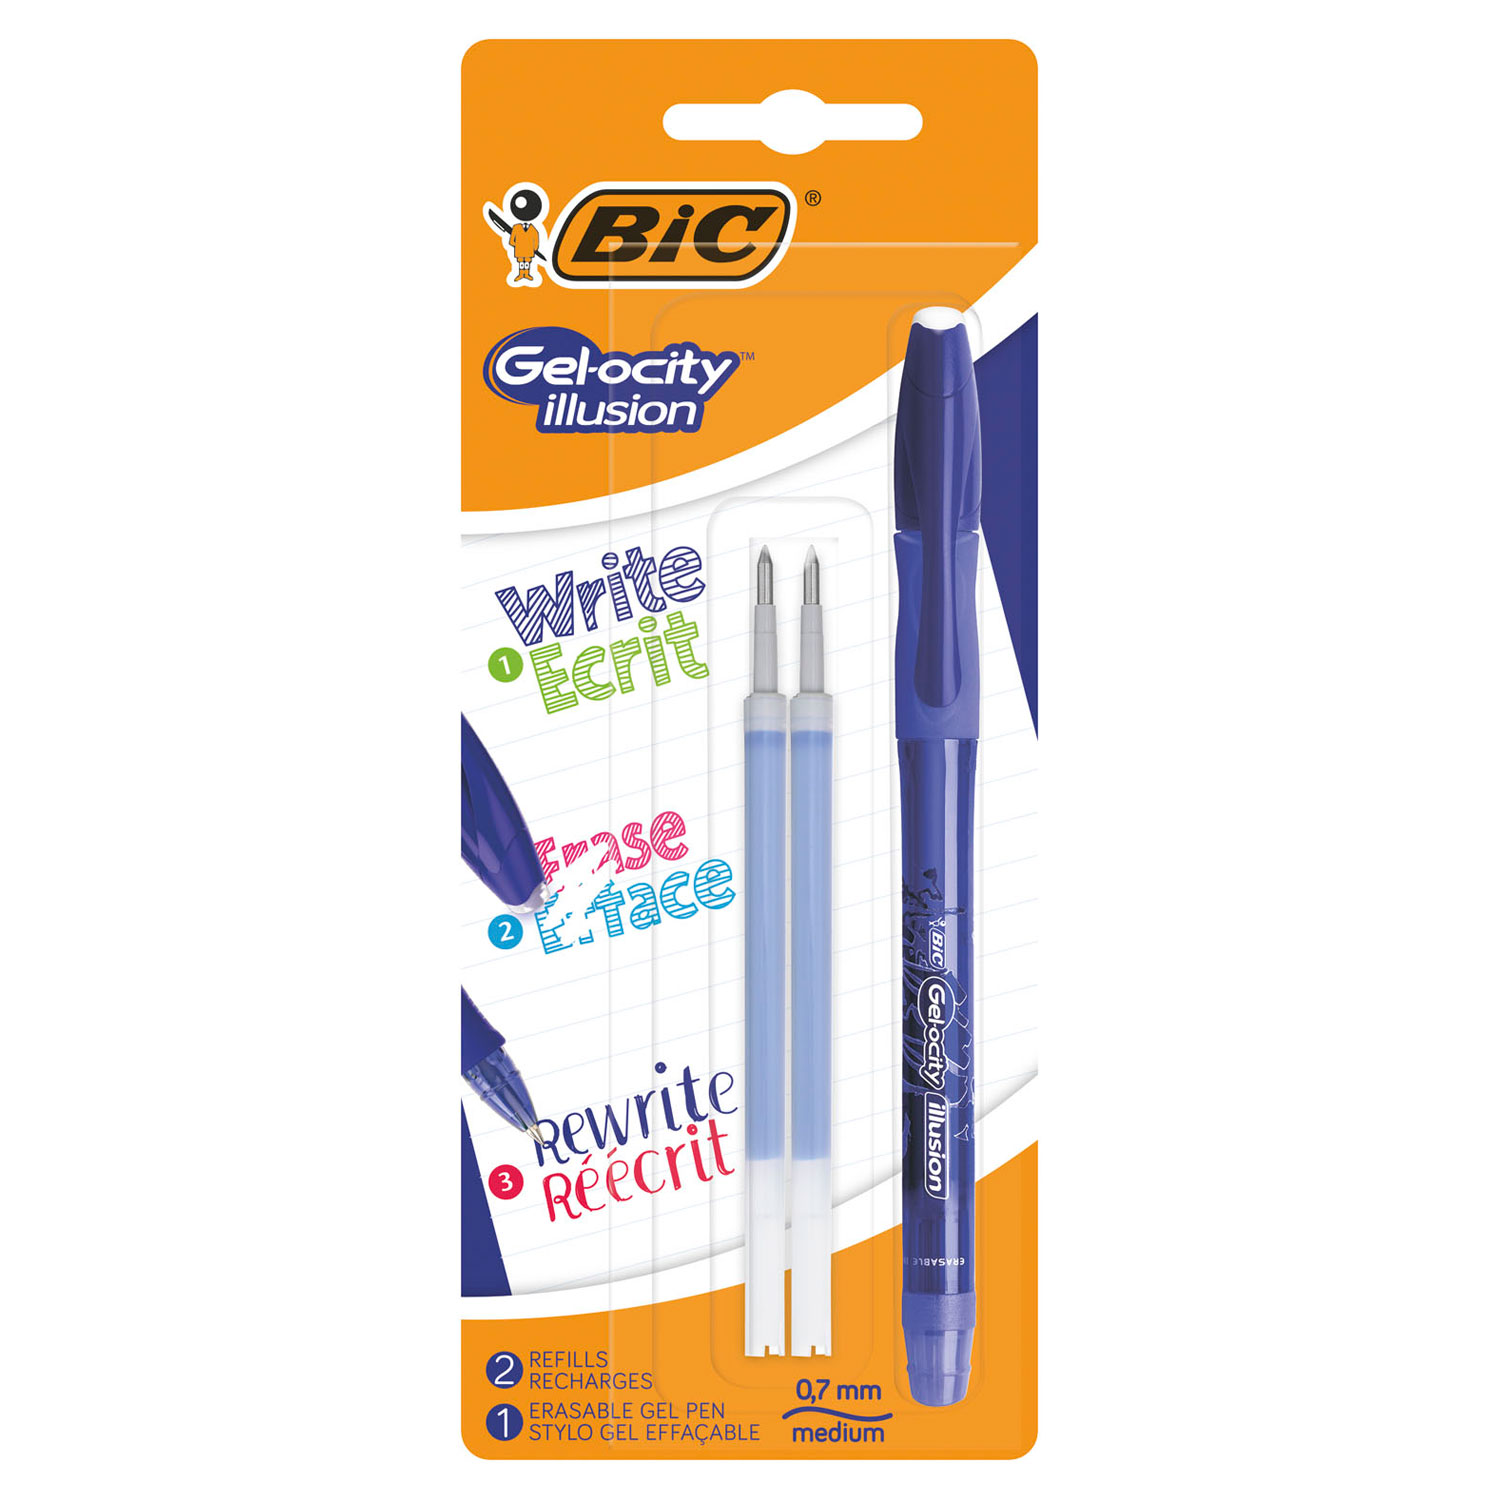 BIC Gelocity Illusion Erasable Gel Pen